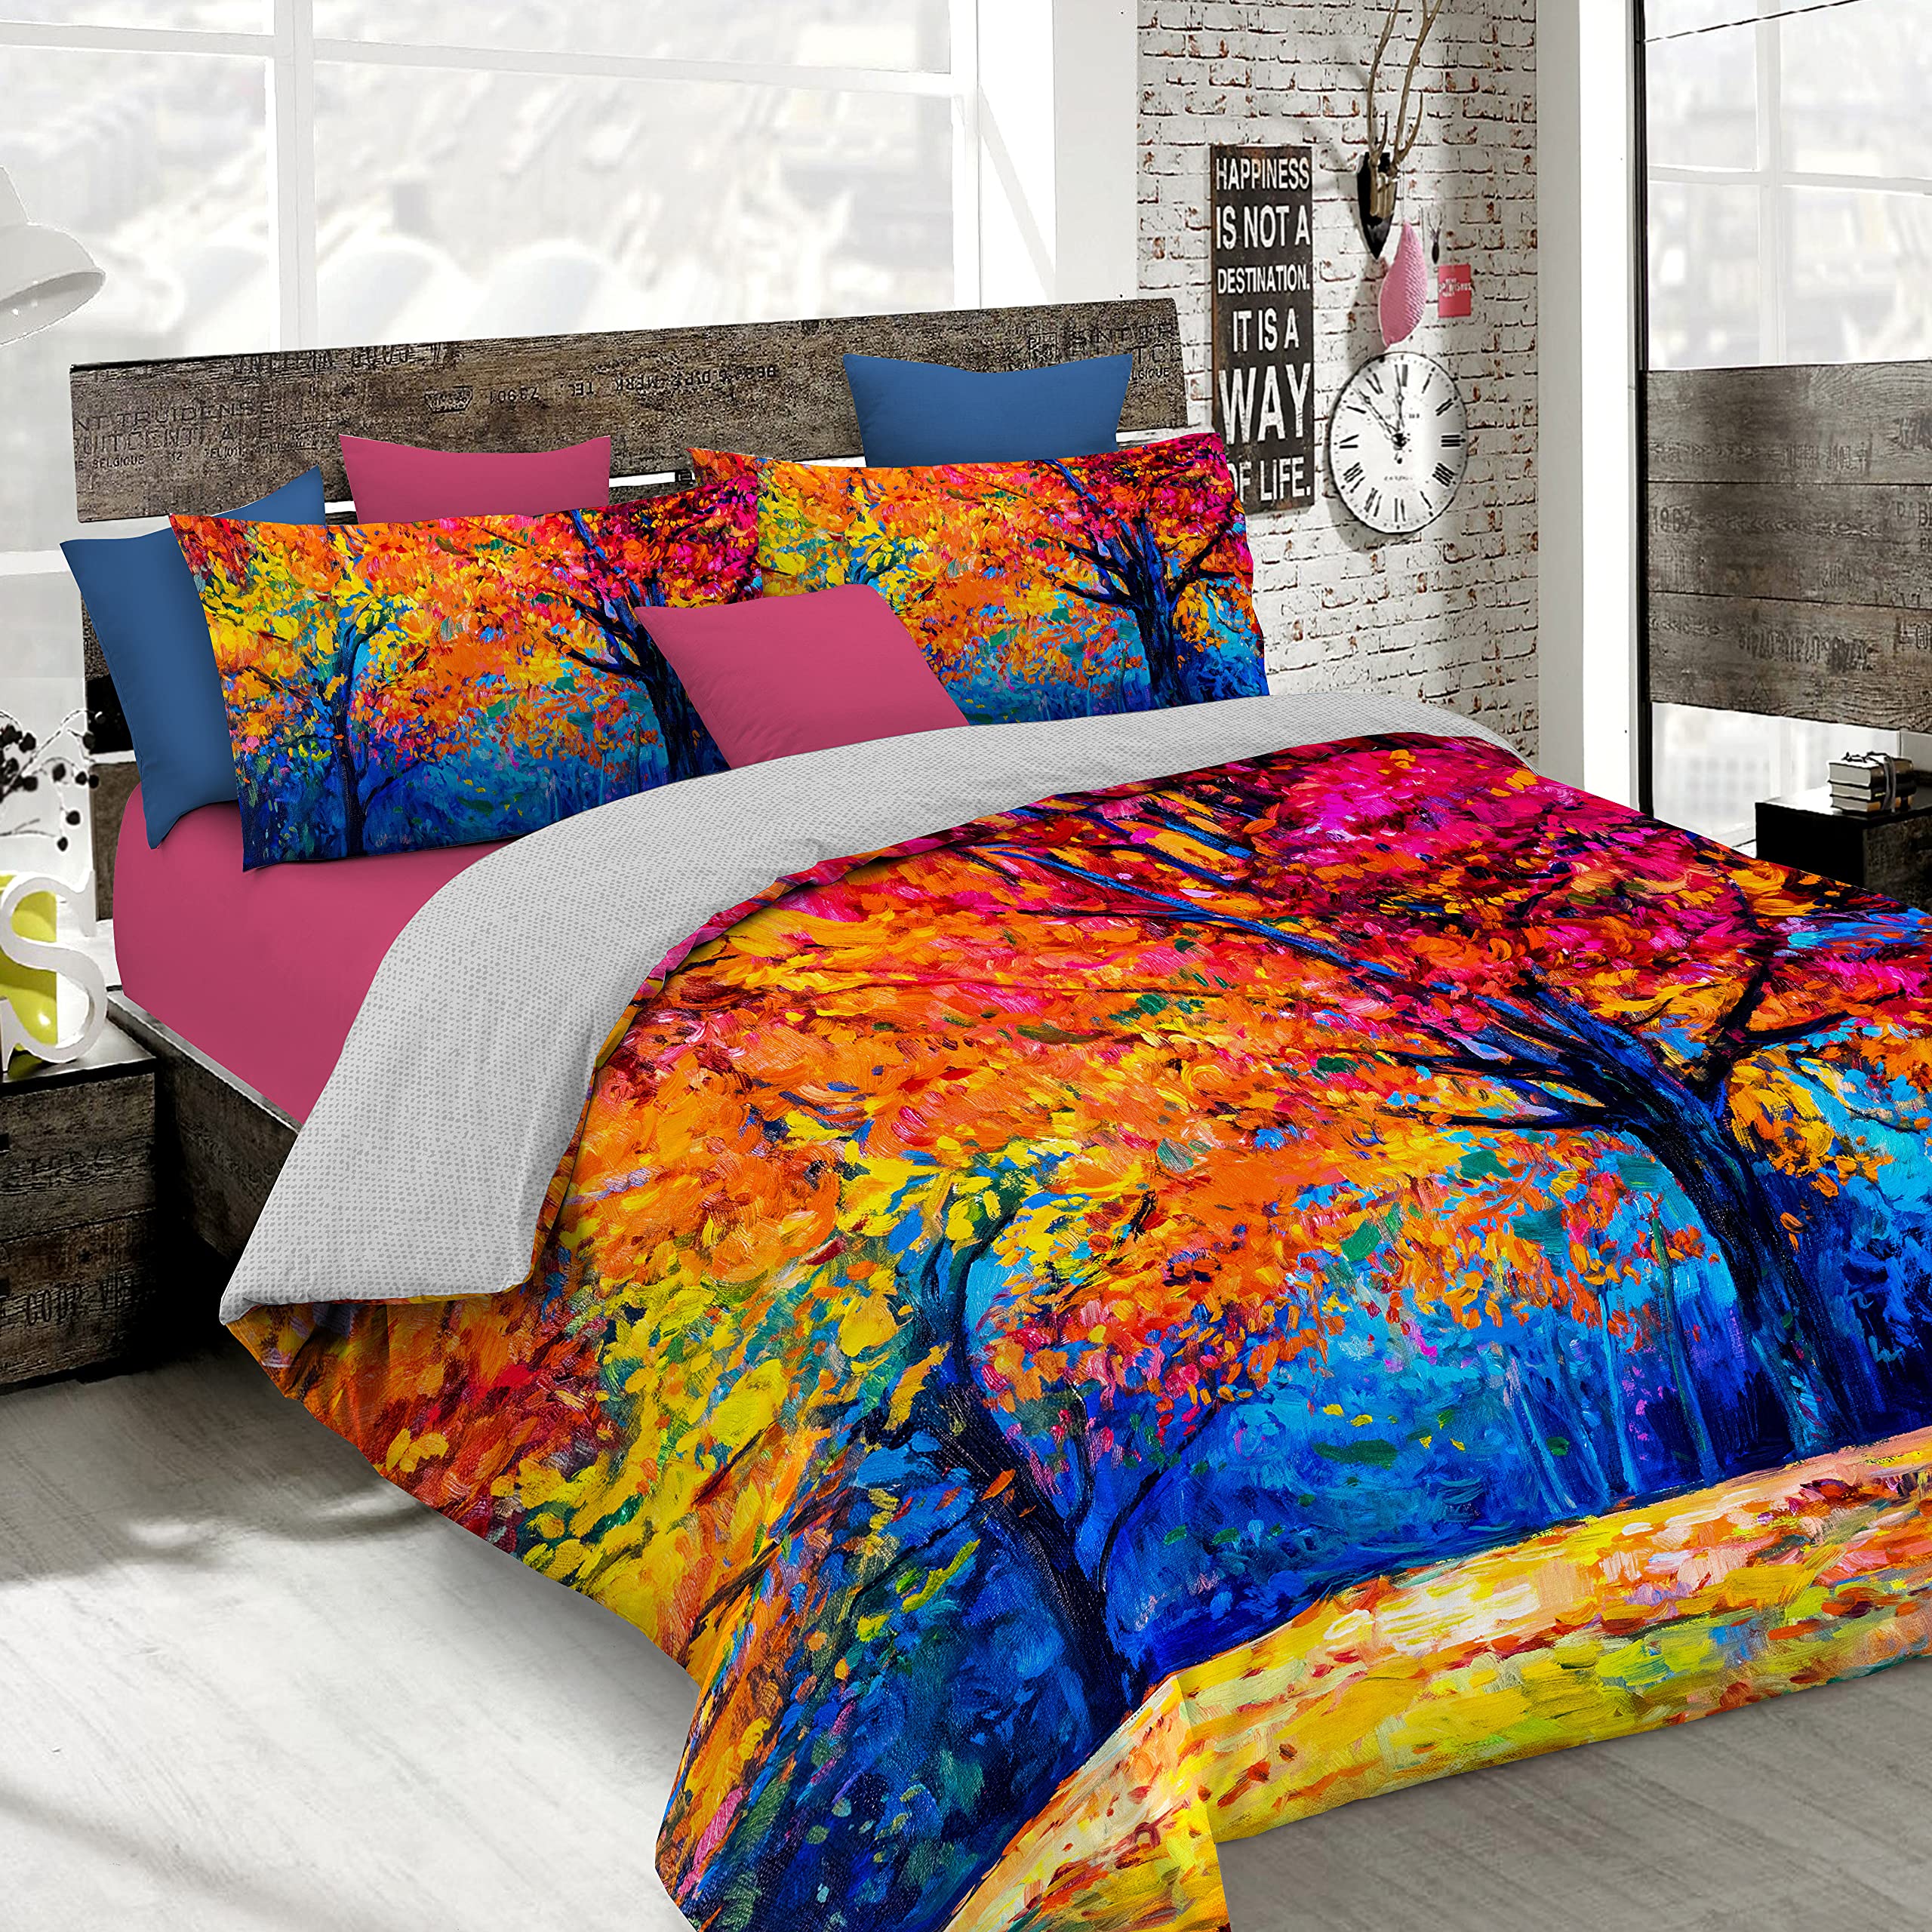 Italian Bed Linen Bettbezug, Doppelte, 100% Baumwolle, Multicolor SD47, DOPPEL